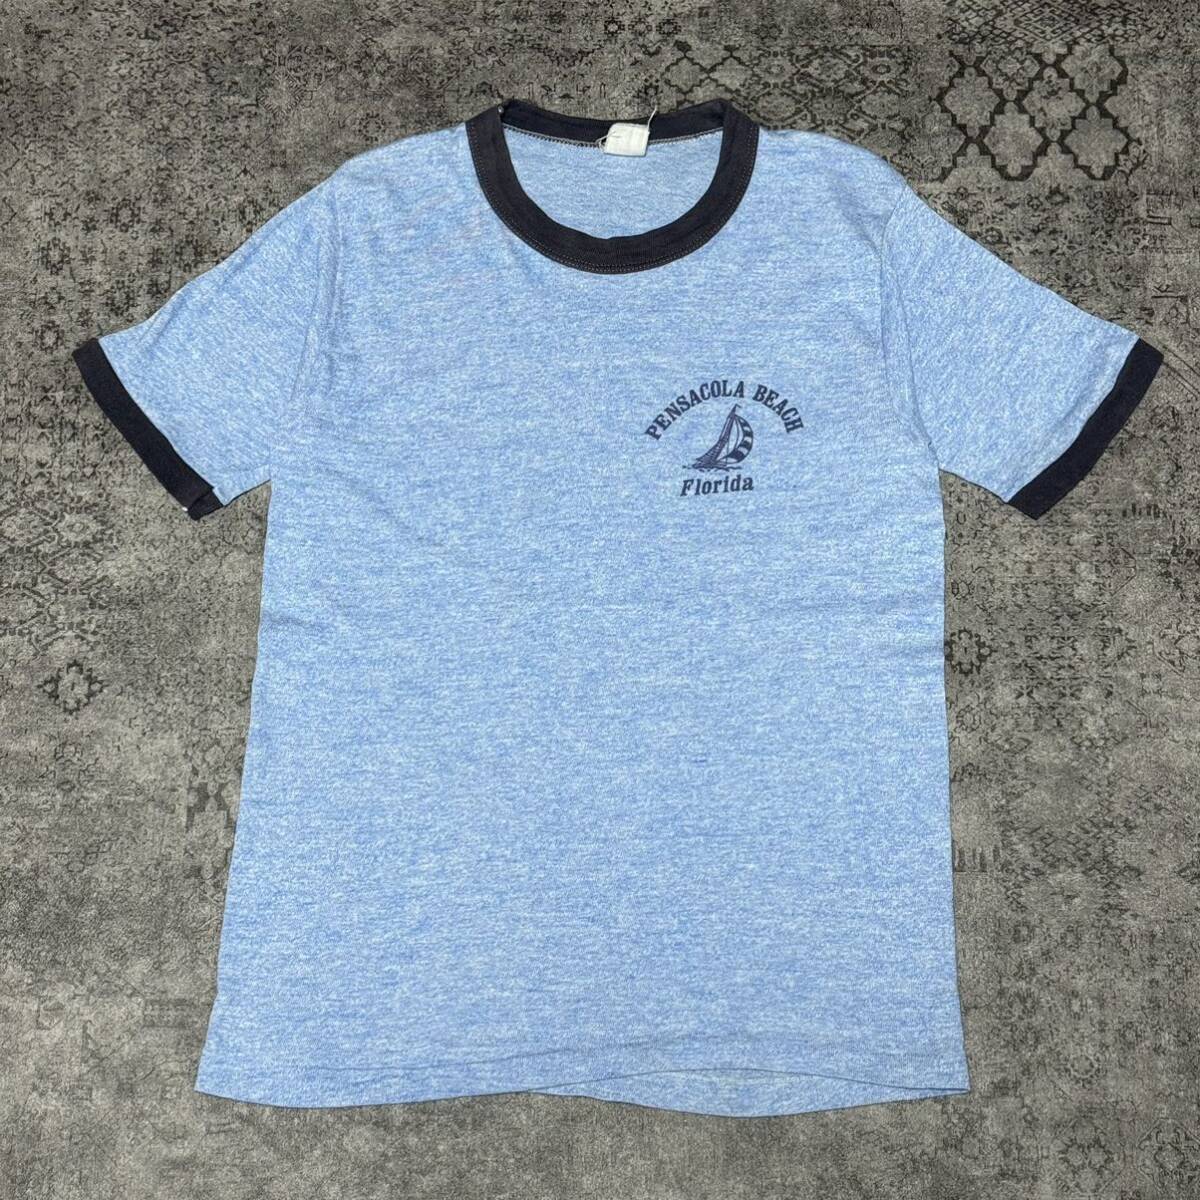 USA製 70s 80s PENSACOLA BAECH FLOLIDA リンガー Tシャツ 半袖 ブルー 70年代 80年代 ヴィンテージ ビンテージ vintage_画像1